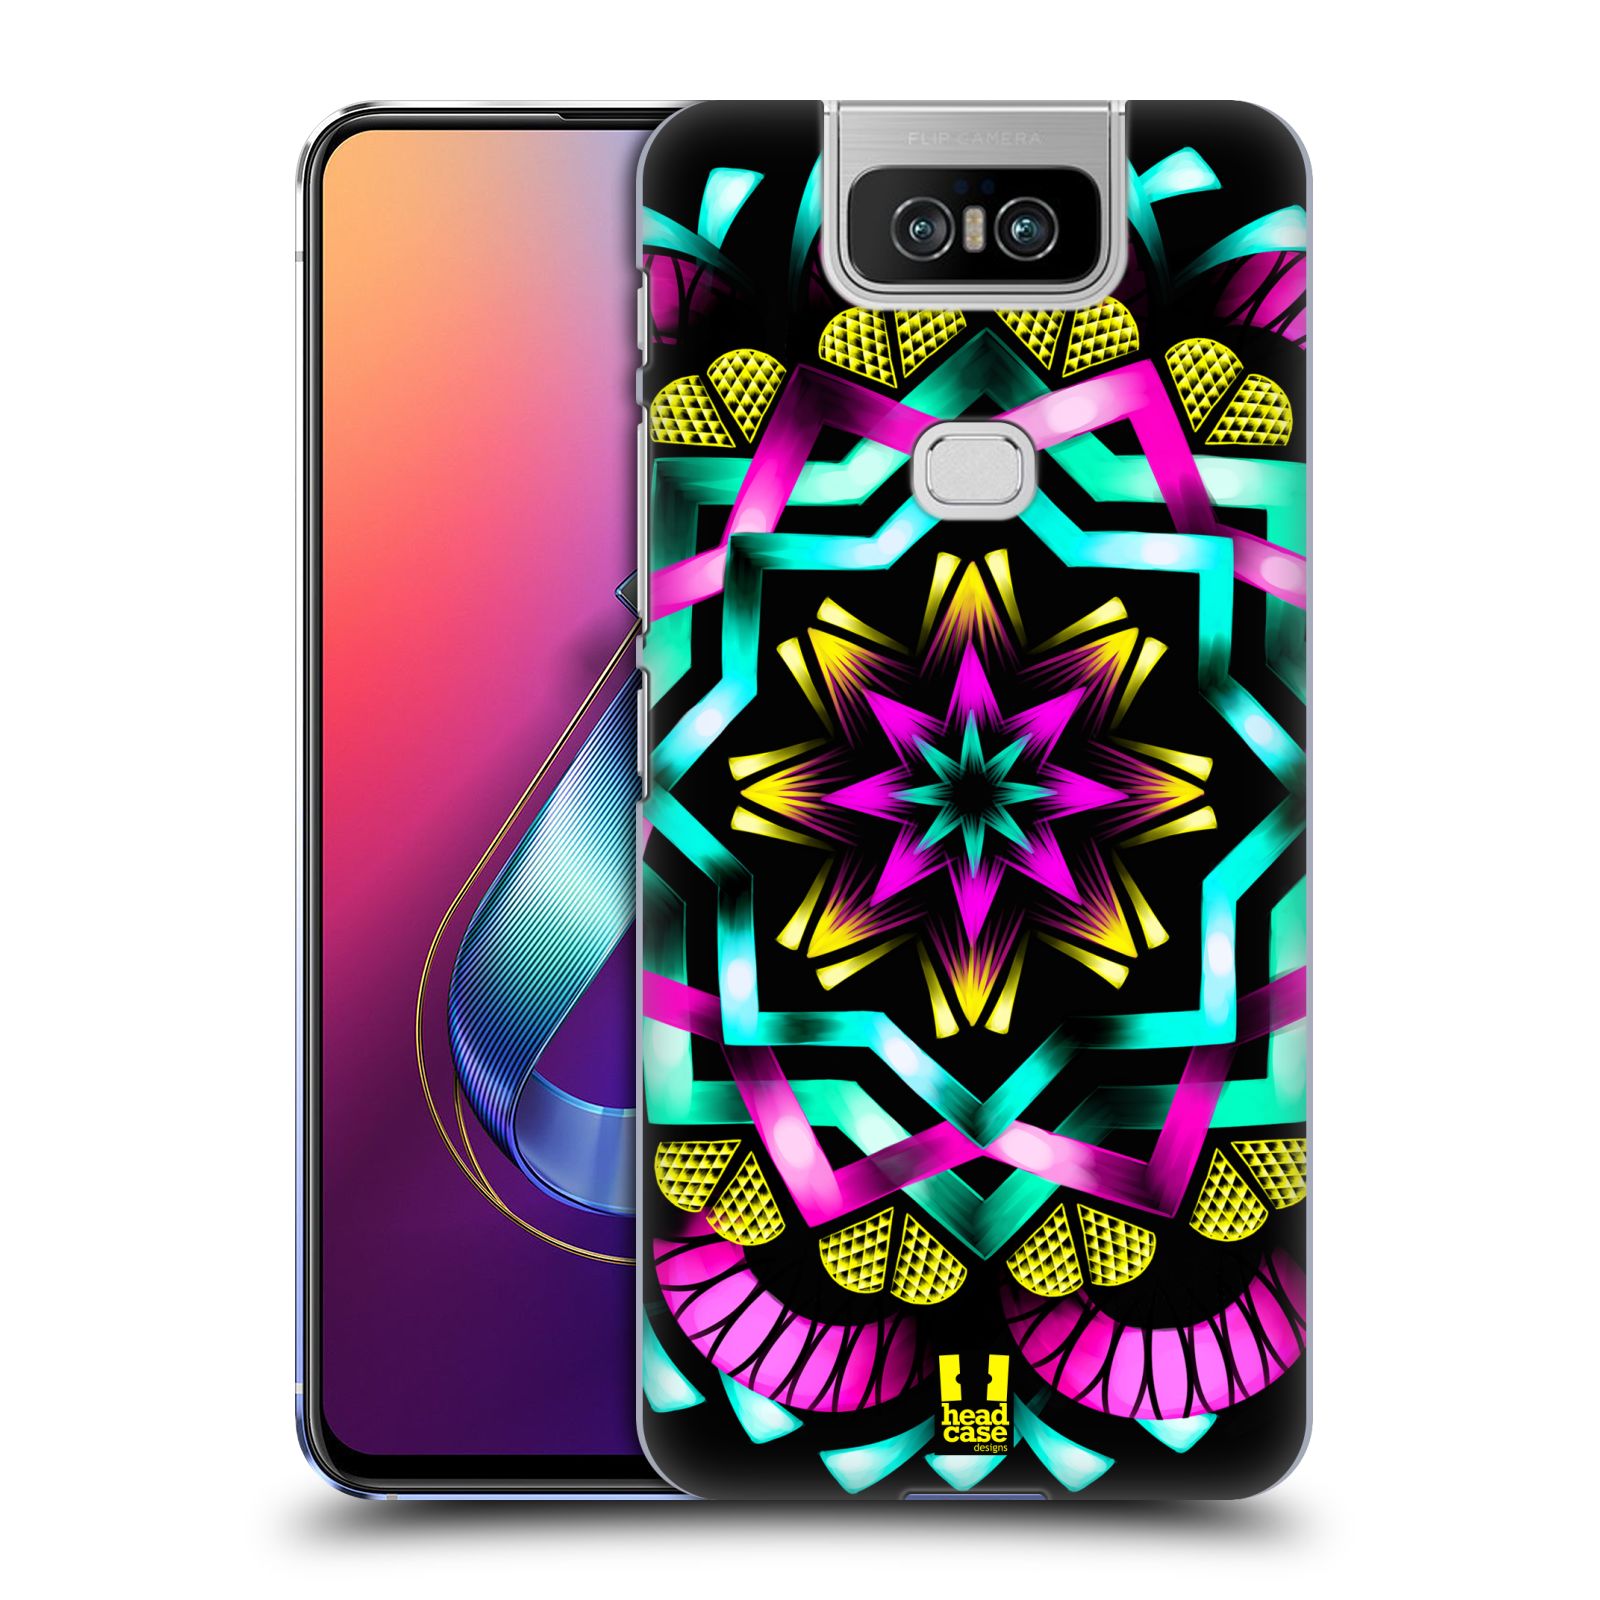 Pouzdro na mobil Asus Zenfone 6 ZS630KL - HEAD CASE - vzor Indie Mandala kaleidoskop barevný vzor SLUNCE